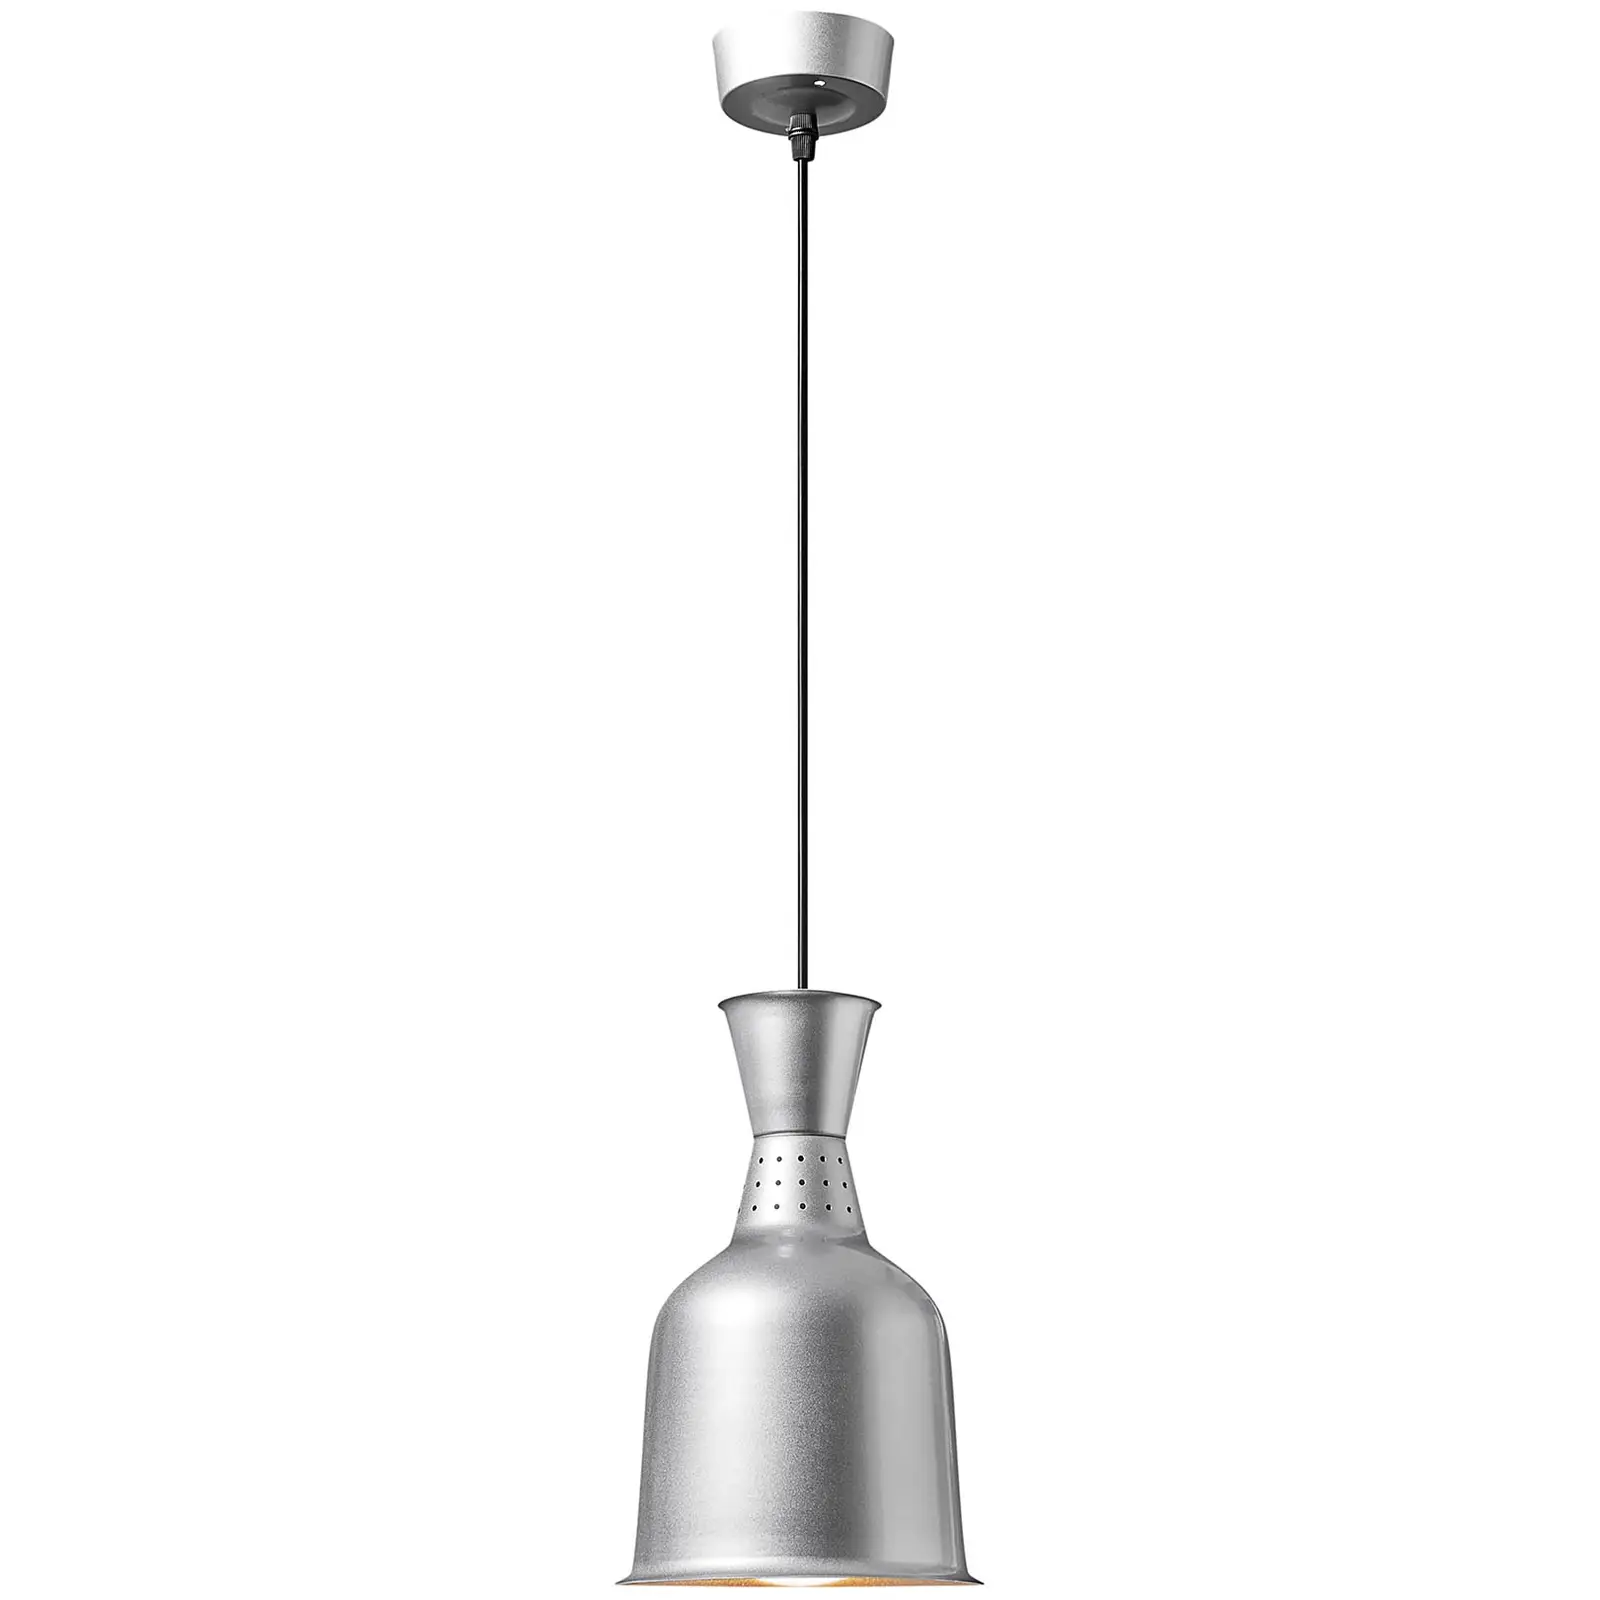 Lampa grzewcza do potraw - srebrna - 18.5 x 18.5 x 28.5 cm - Royal Catering - stal